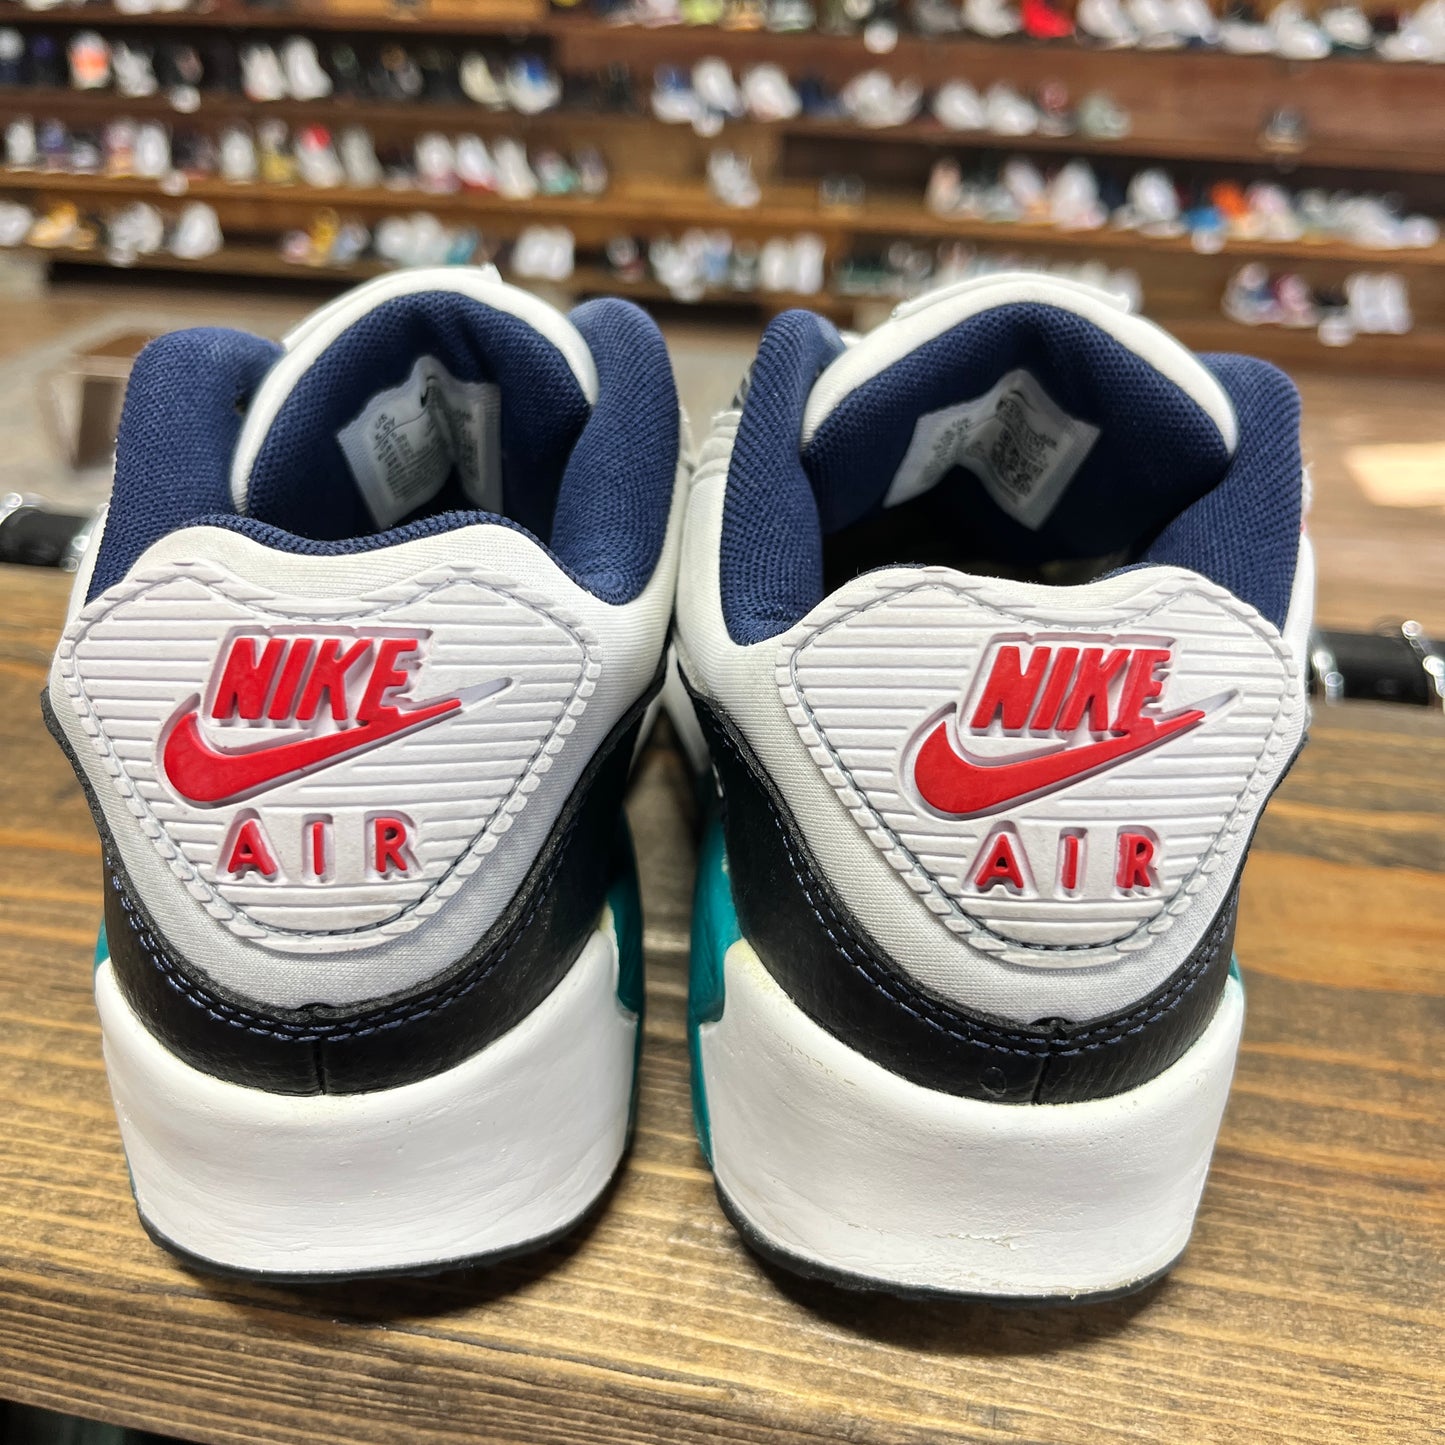 Nike Air Max 90 'Ken Griffey Jr.' Size 5.5Y